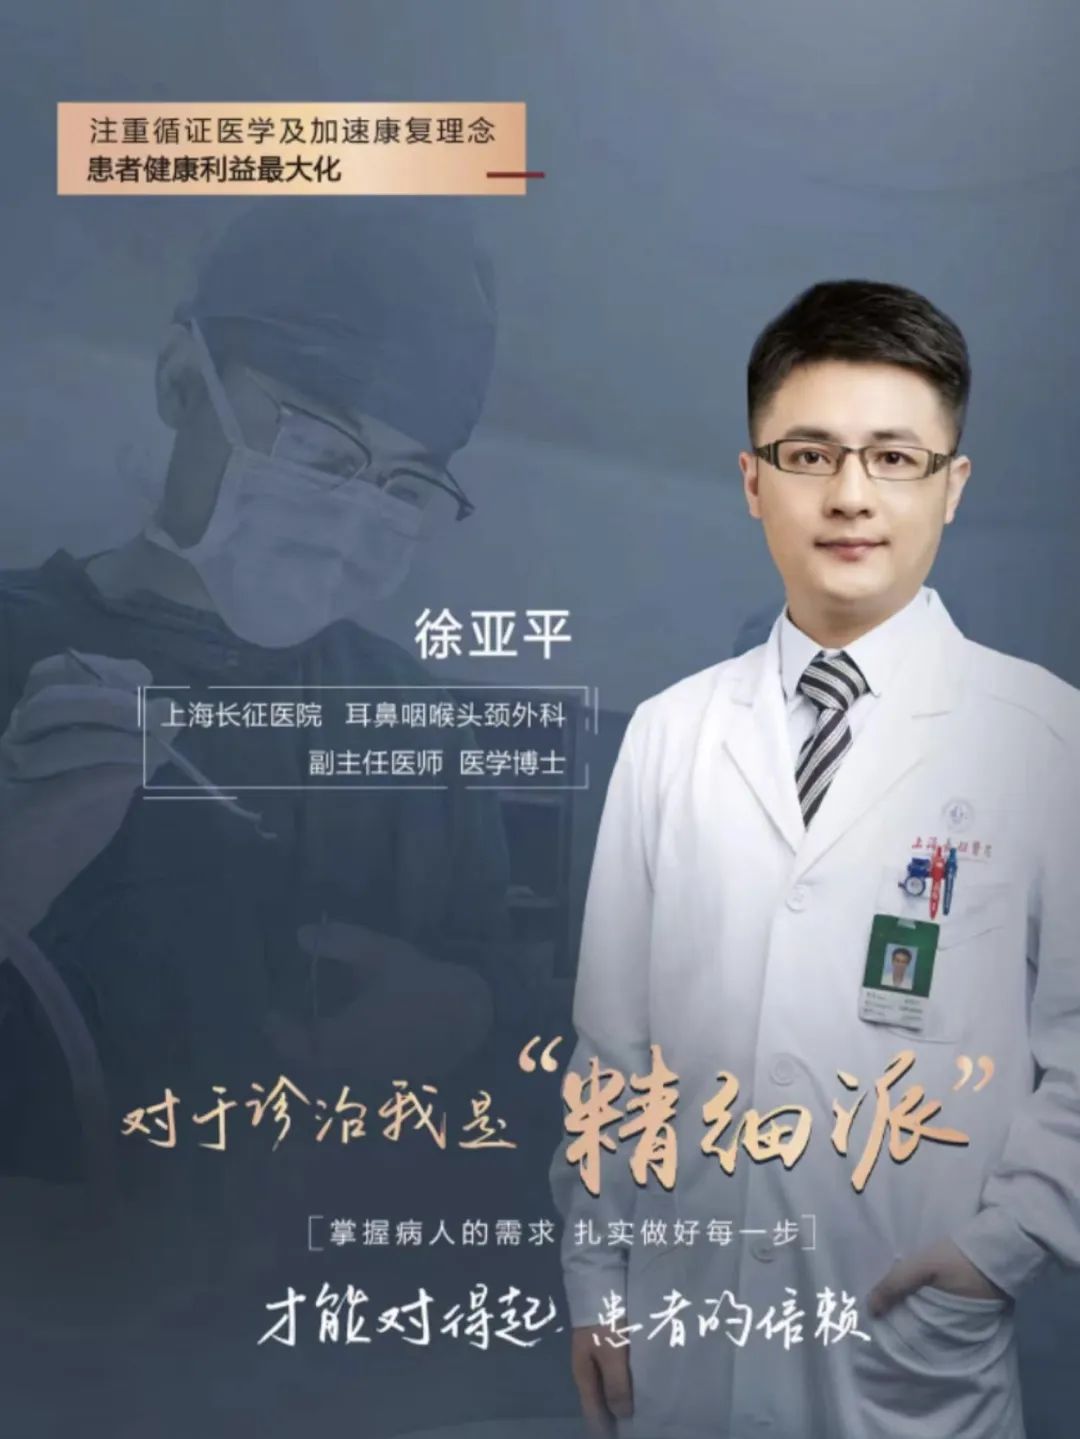 6月23日上海长征医院耳鼻喉科专家徐亚平在区中医院坐诊